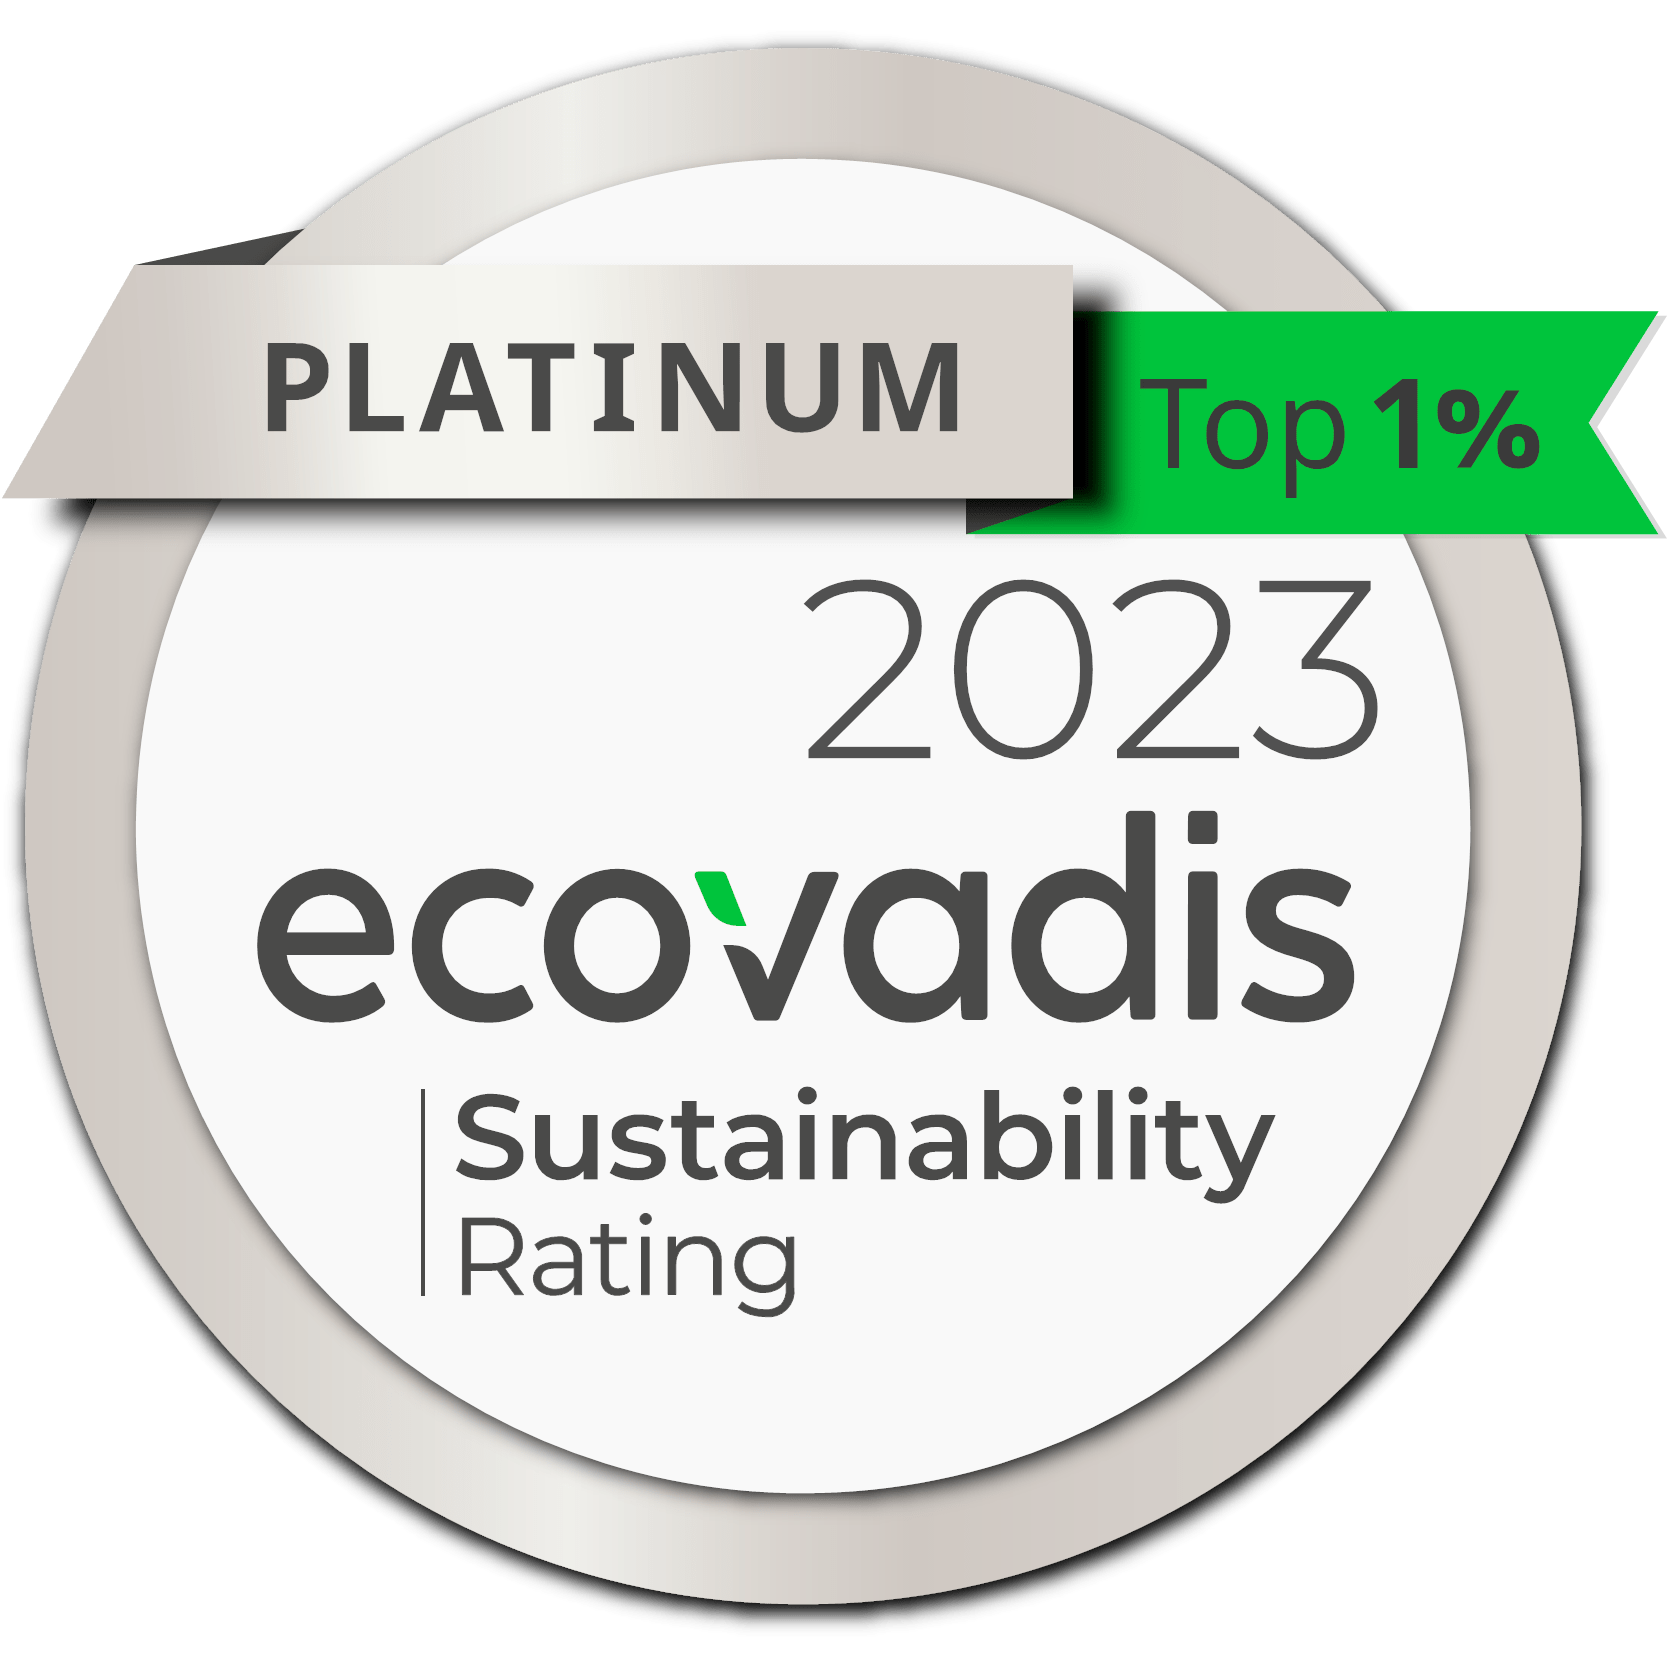 Platinum 2023 Ecovadis Sustainability Rating